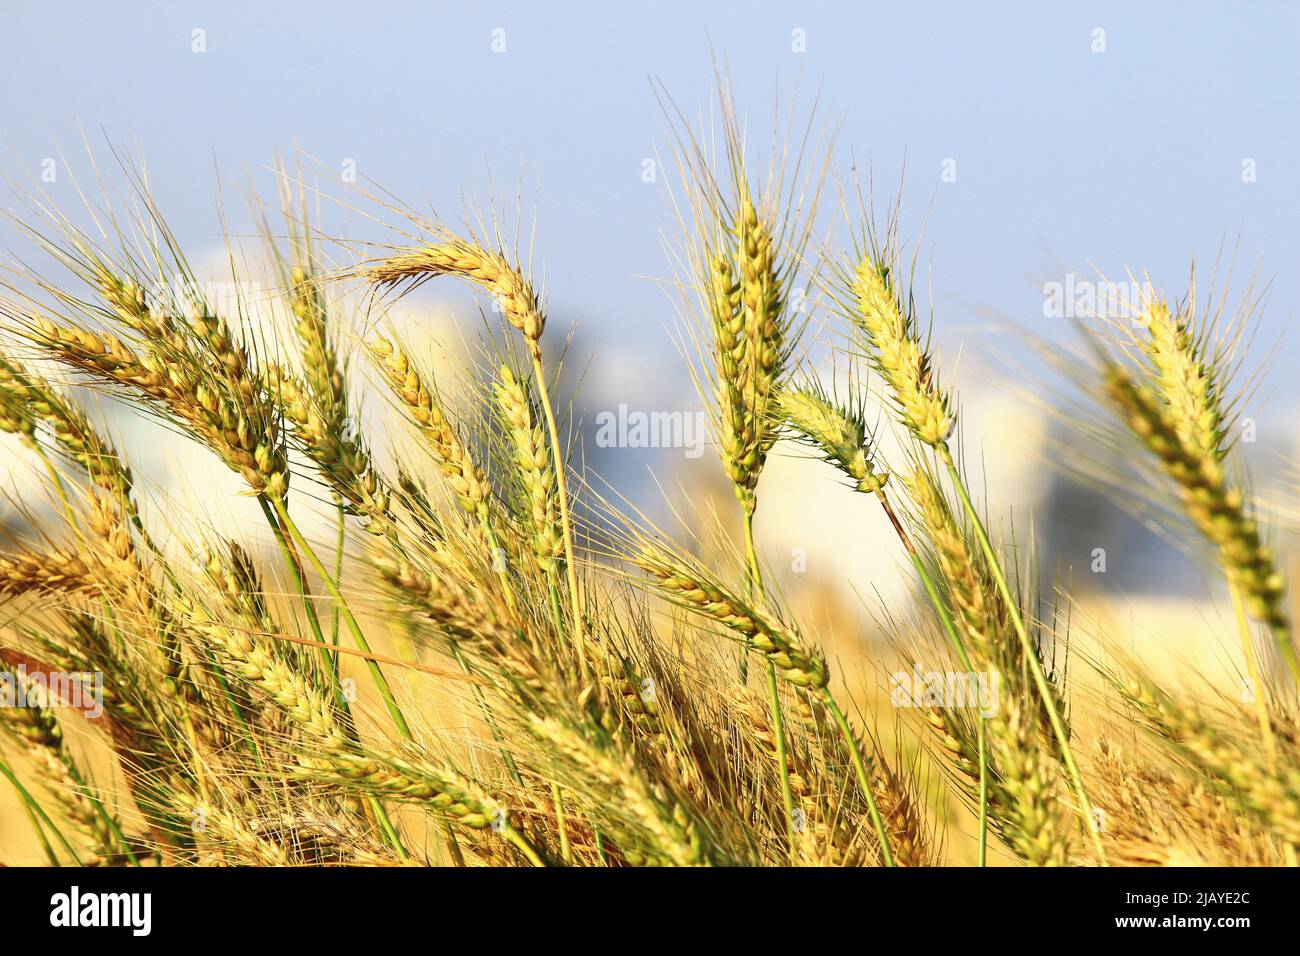 Bella vista di spighe di grano dorato con sfondo cielo blu, primo piano di giallo con spighe di grano verde che crescono nella campagna in una giornata di sole Foto Stock